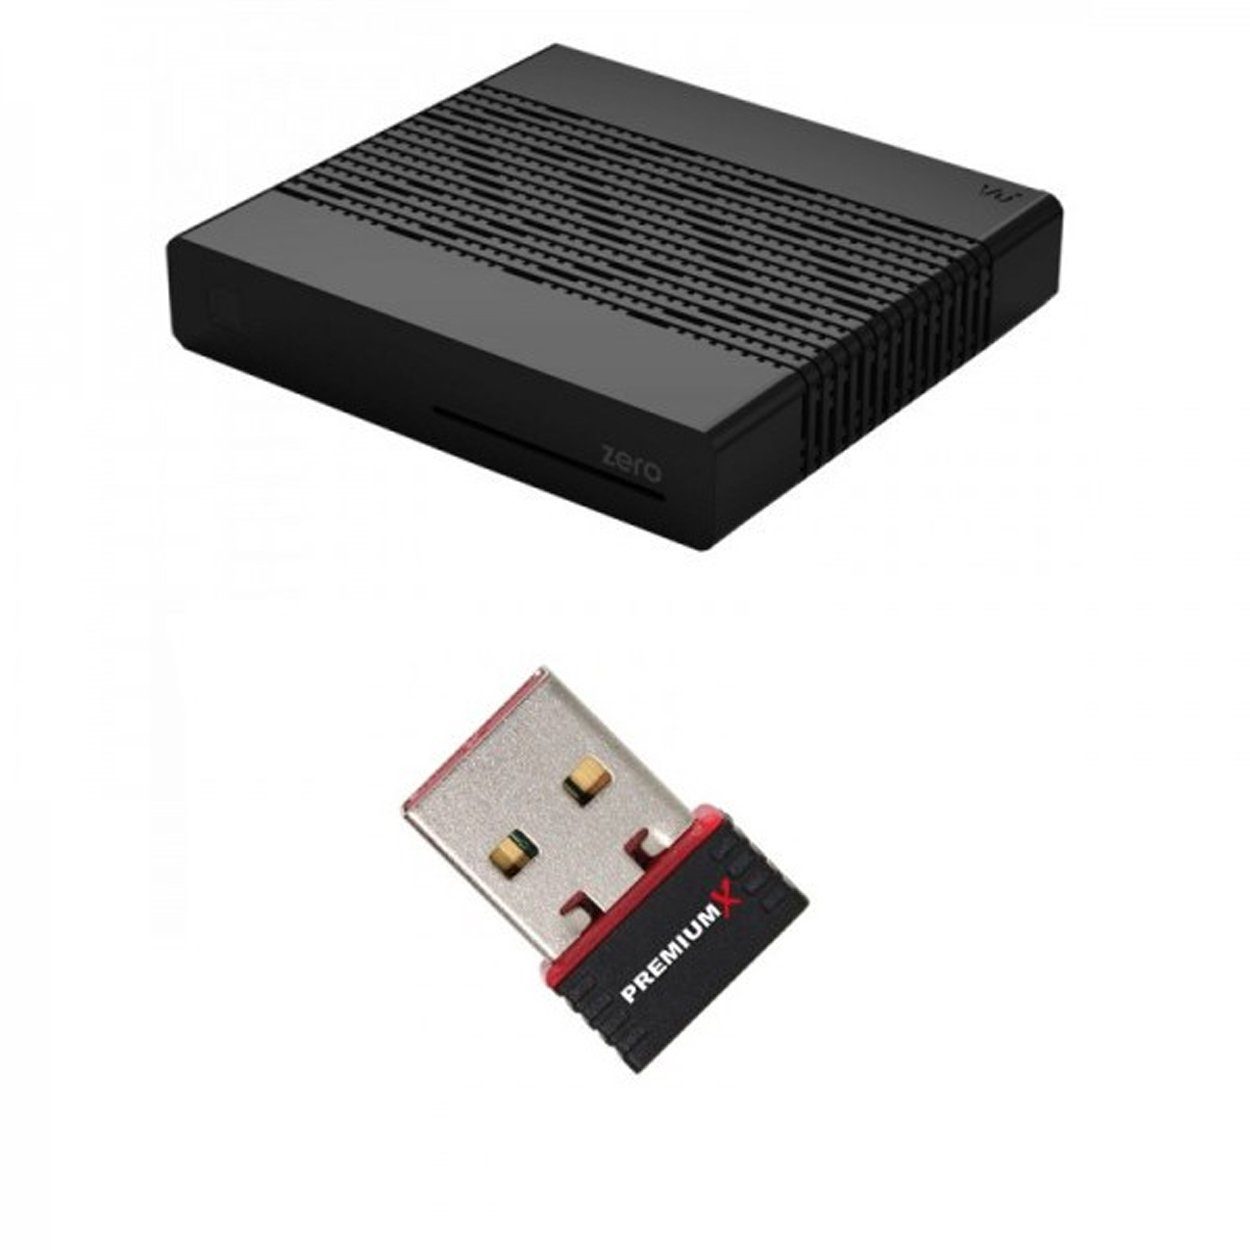 Black DVB-S2 SAT-Receiver Wlan-Stick Receiver VU+ SAT Linux 1x VU+ ZERO Digital Sat